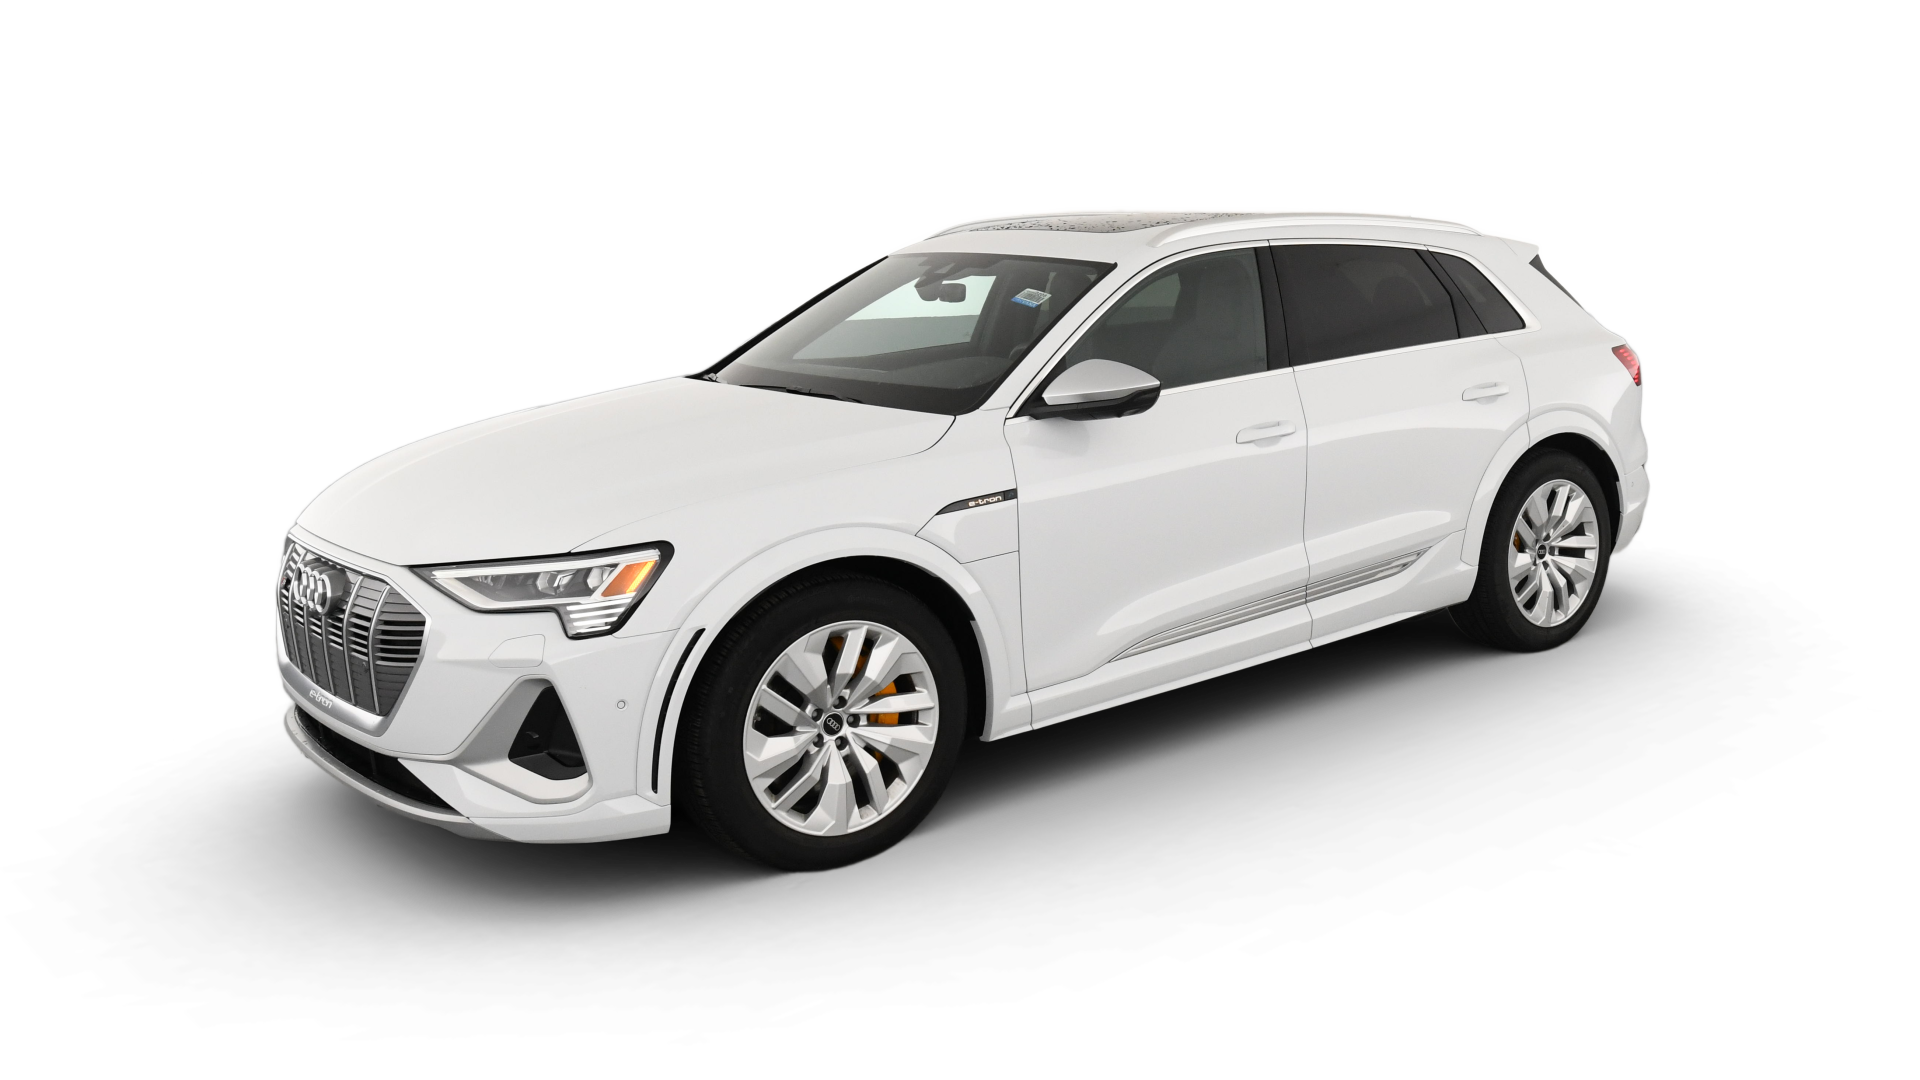 Audi e-tron S model image.